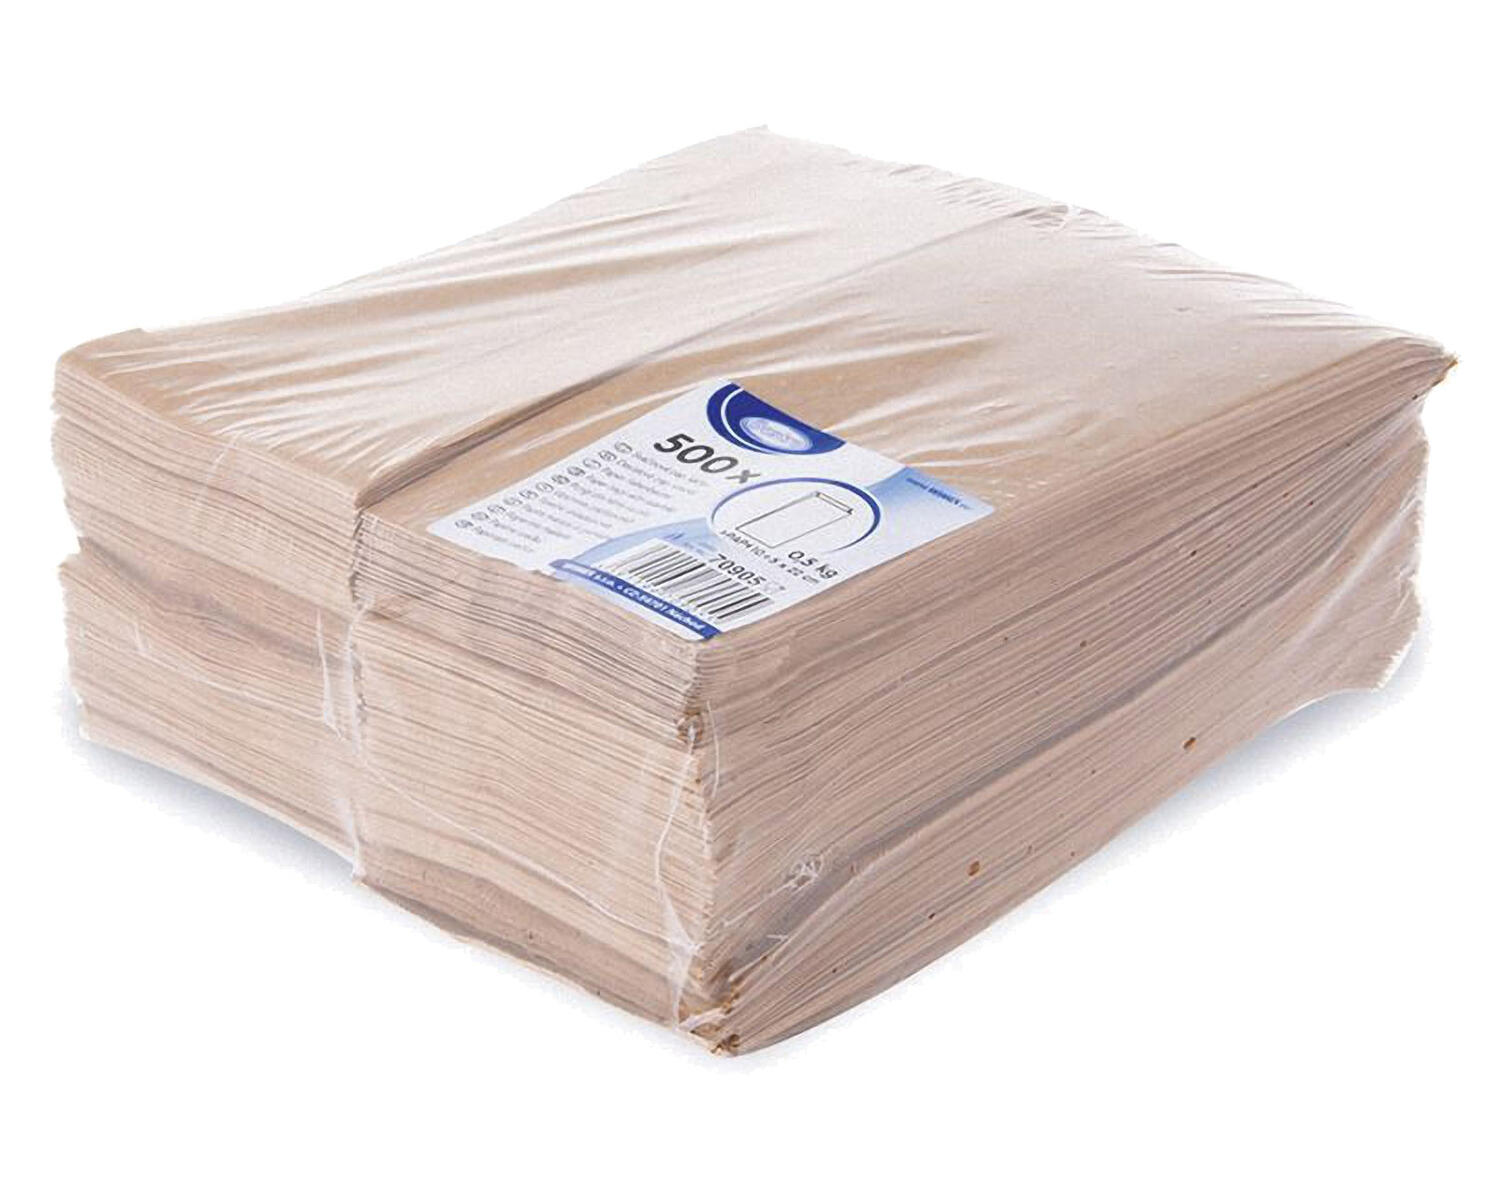 Papierfaltenbeutel Papiertten braun 10+5 x 22 cm fr ca. 0,5kg Inhalt, 500 Stk.